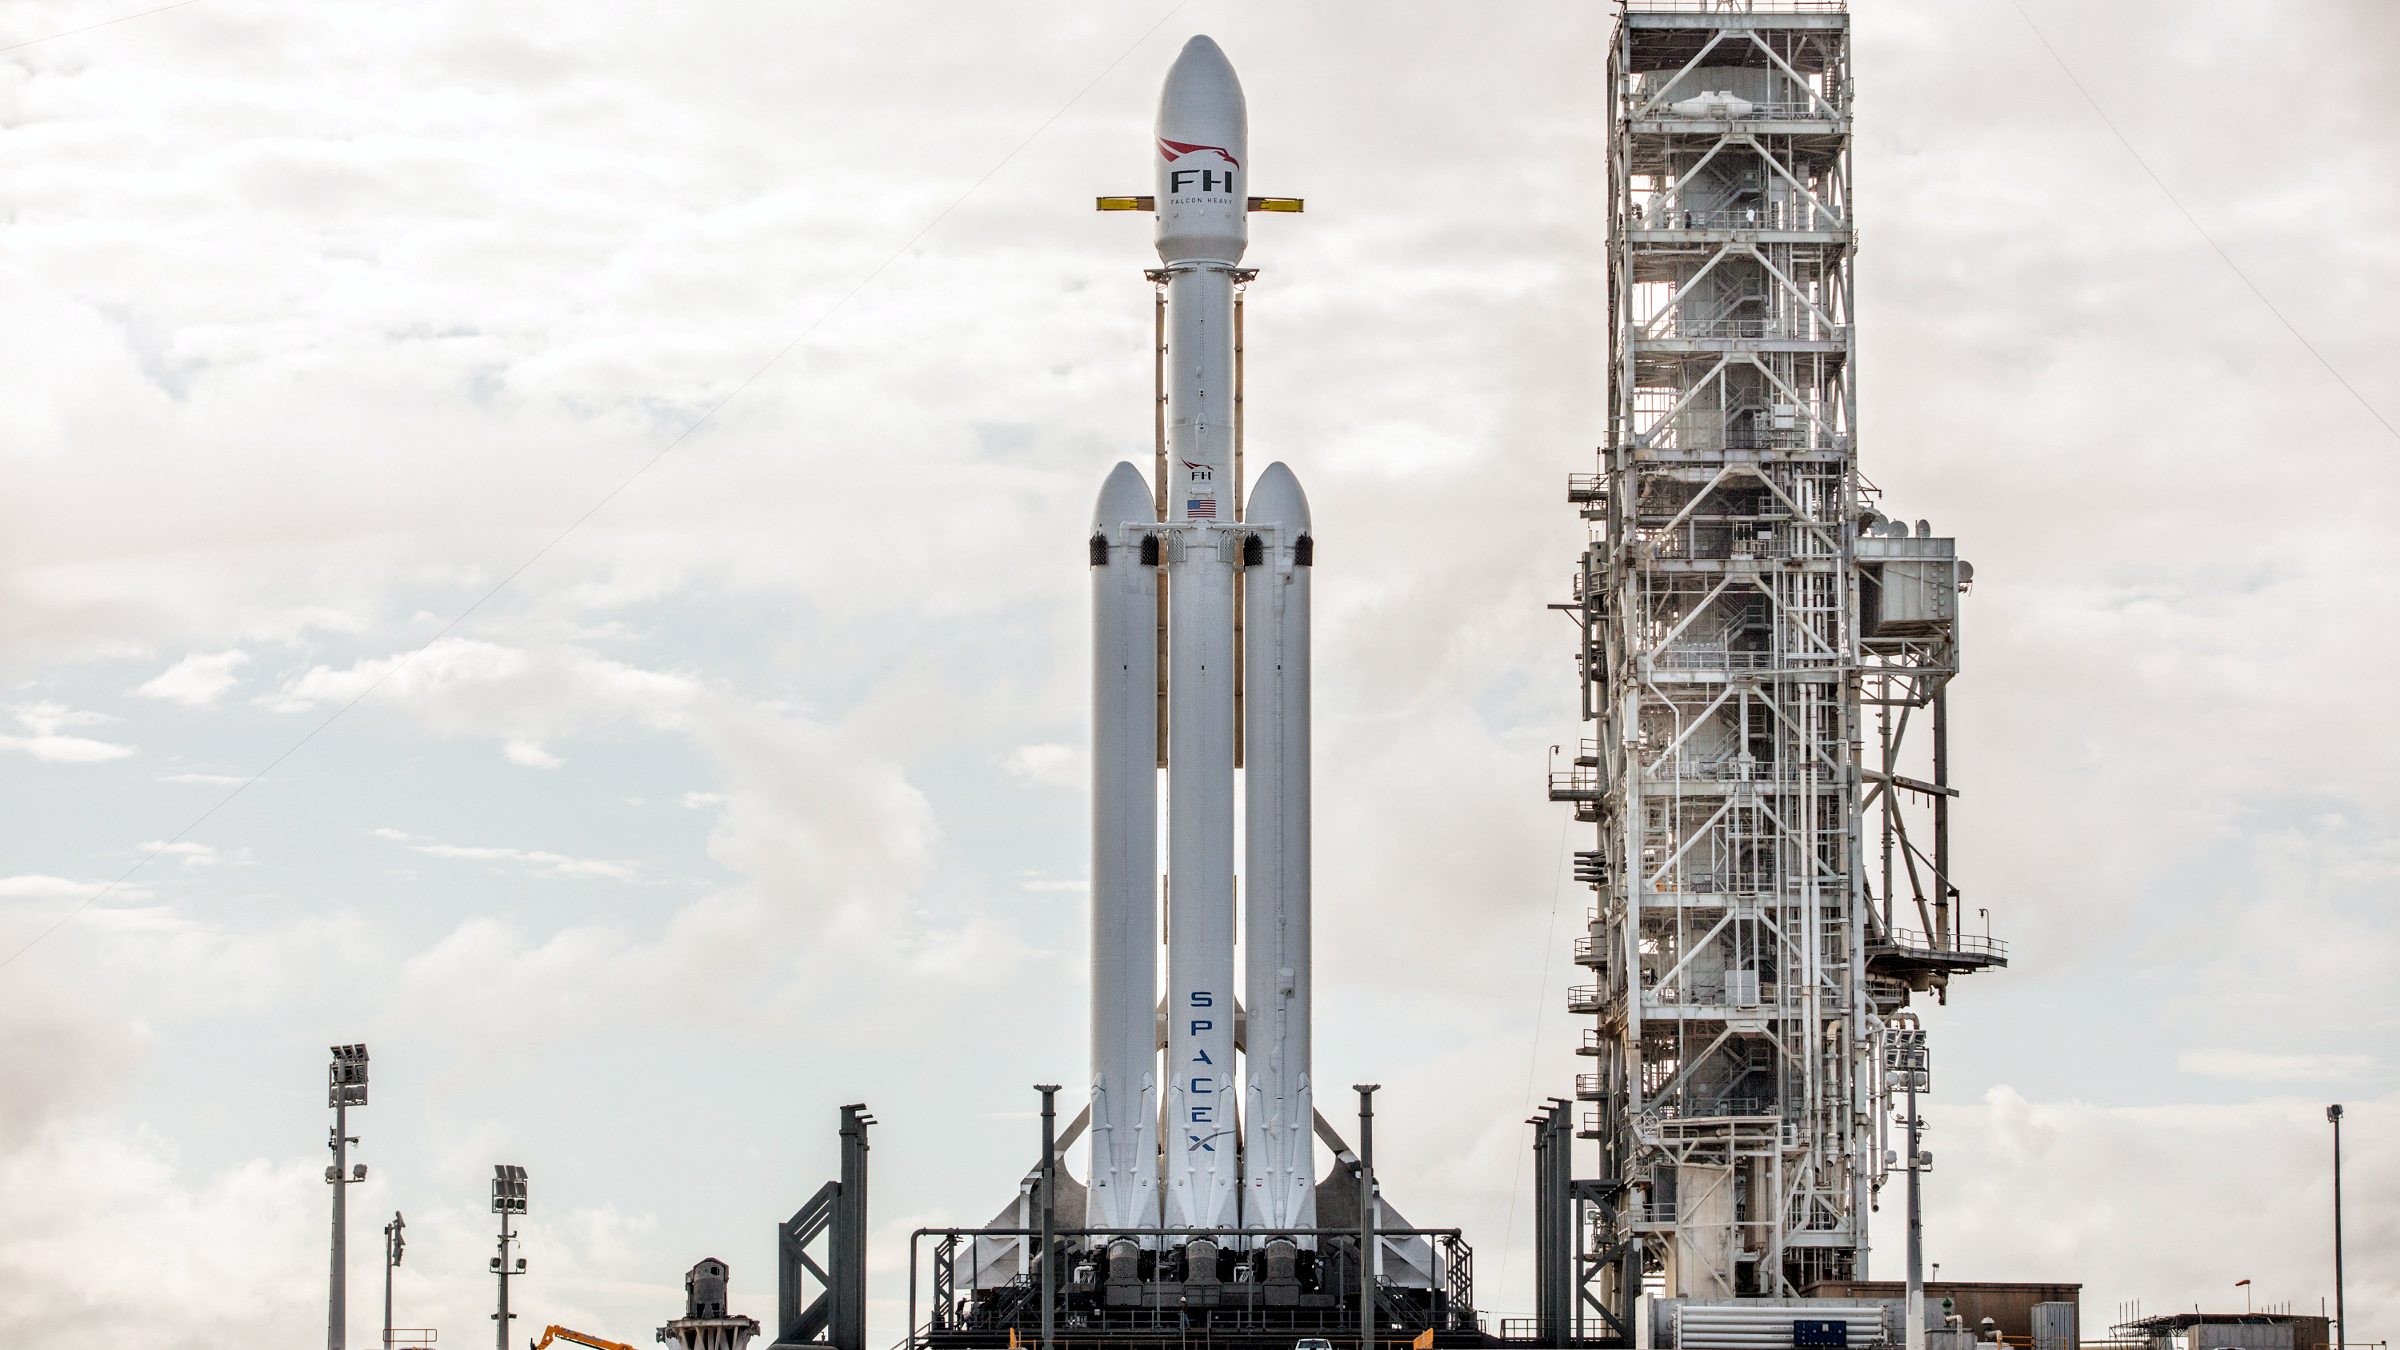 spacex-falcon-heavy-launch-rocket-debut-elon-musk-sls-moon-mars.jpg